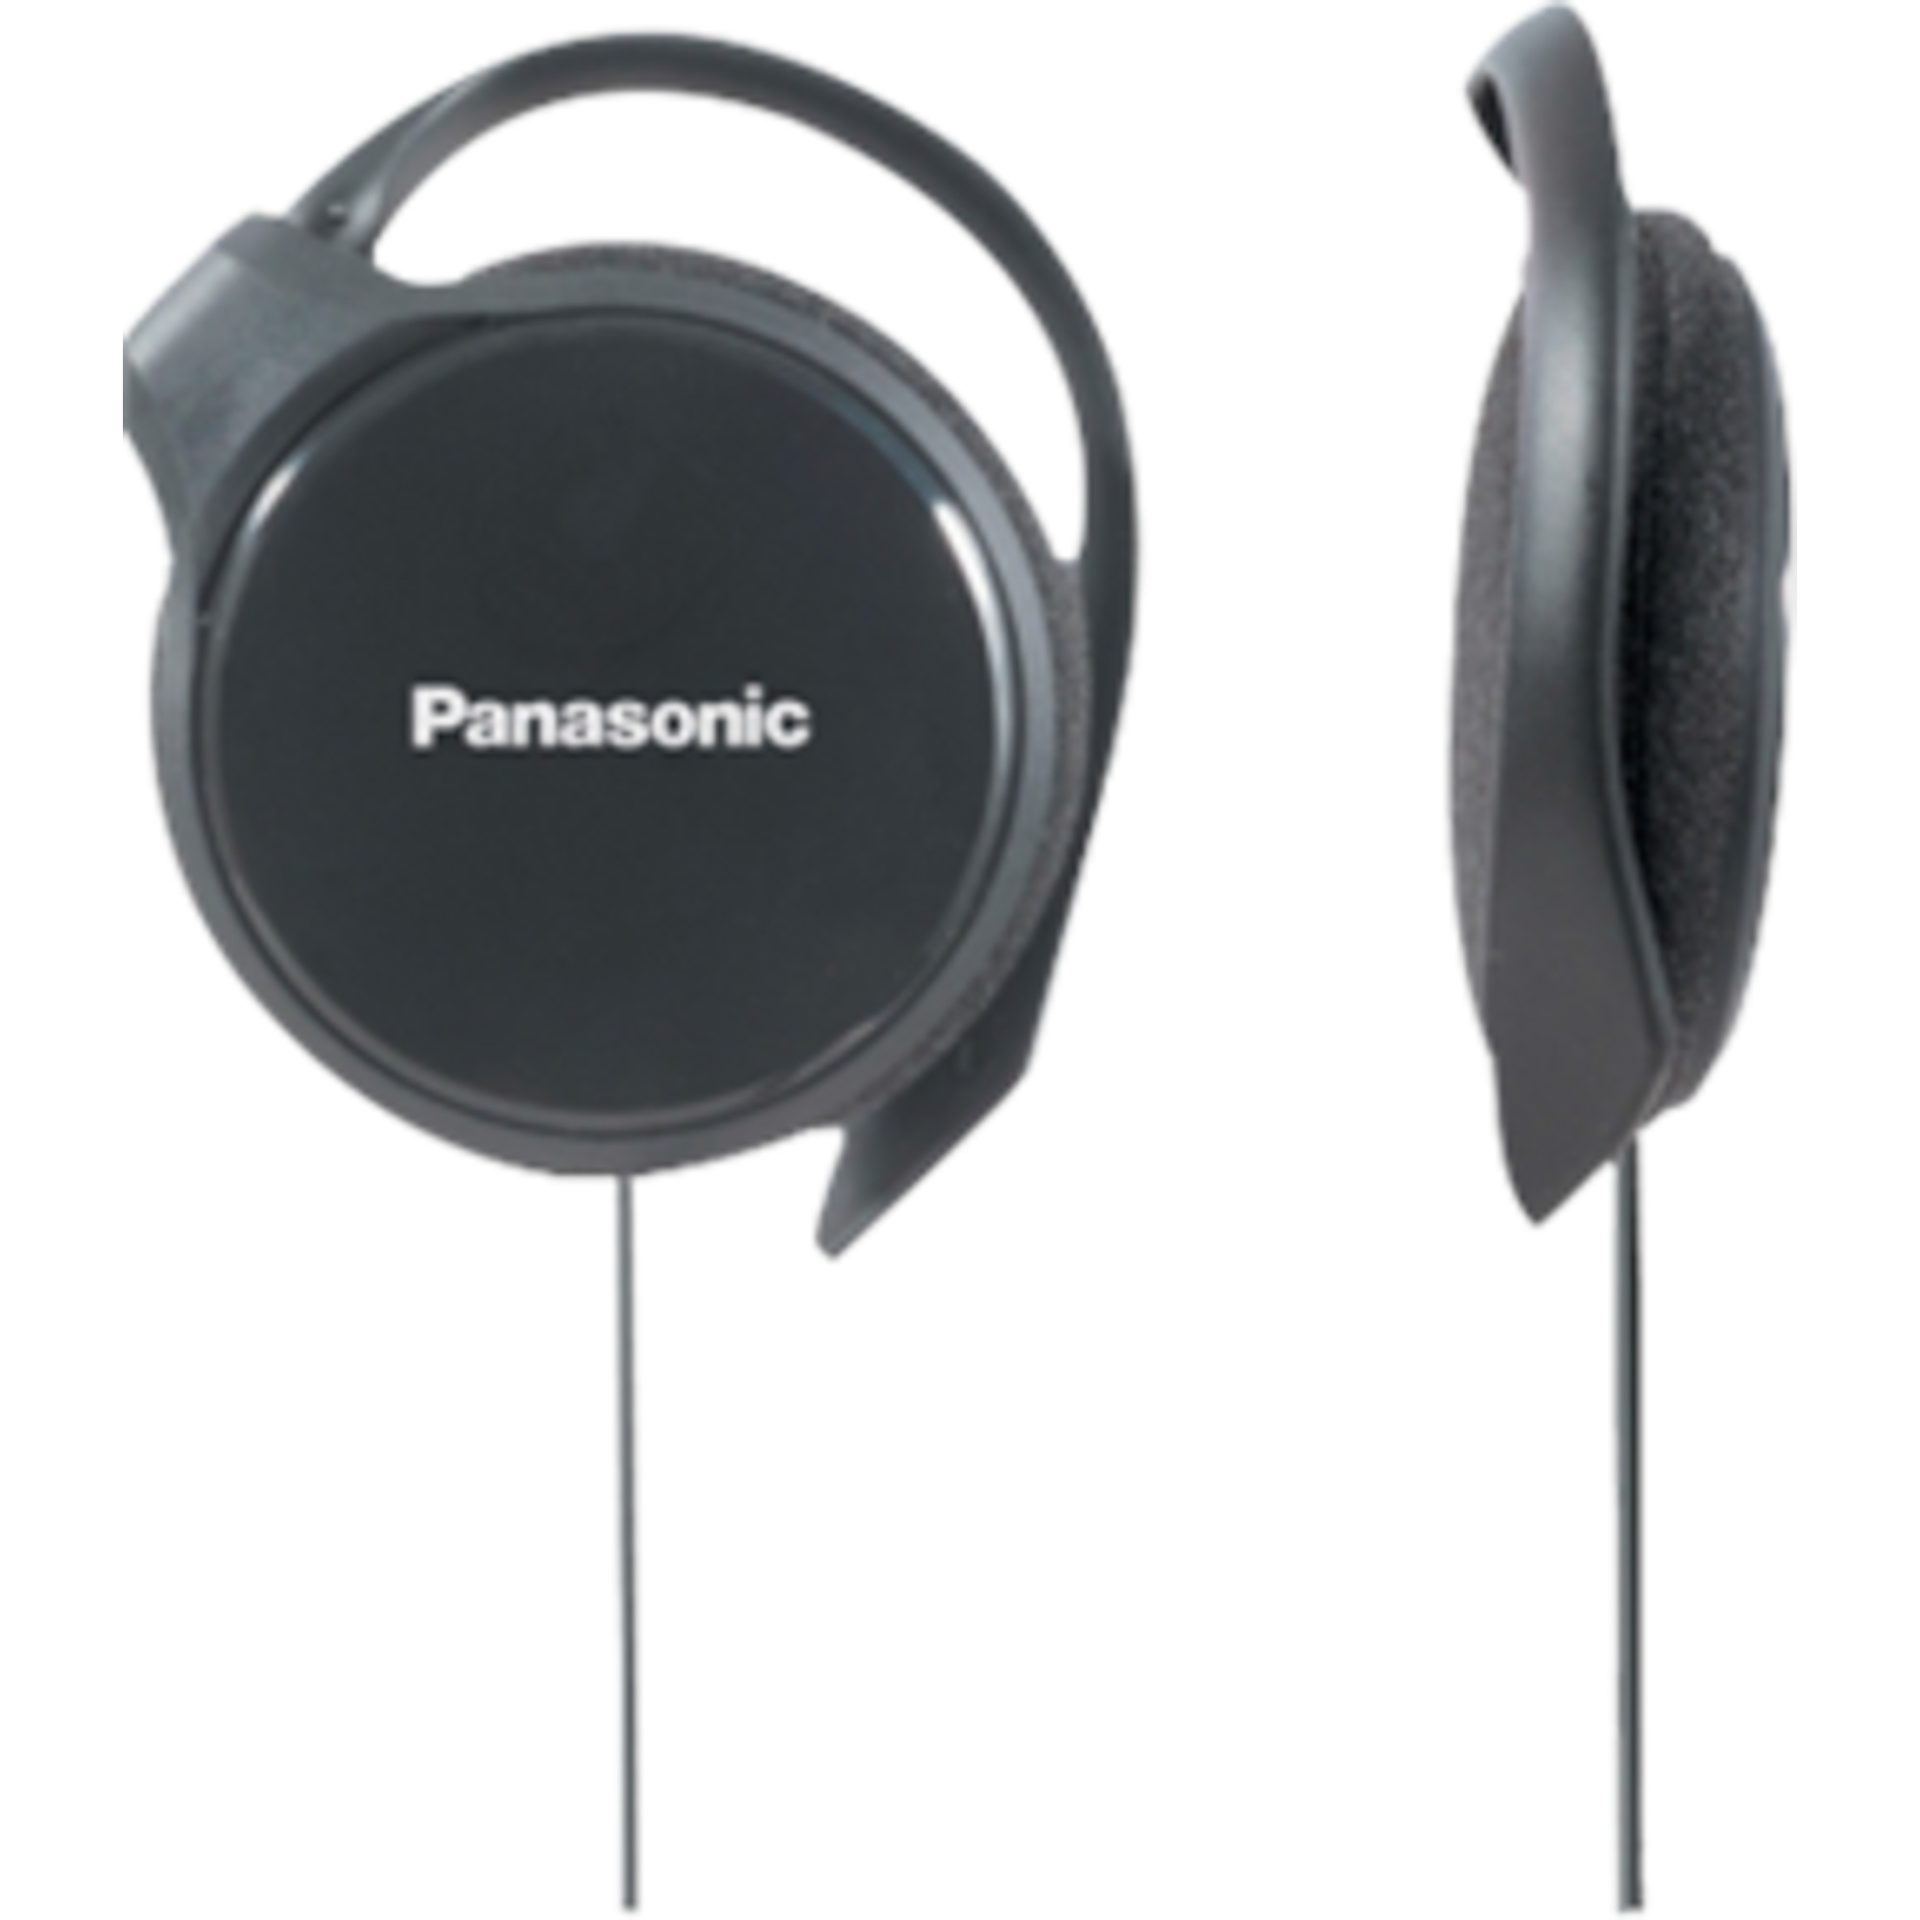 Panasonic RP-HS46 ultraplochá klipsní sluchátka do uší (30mm měniče, ergonomický chrámový design, 20 Hz - 20 kHz), černá